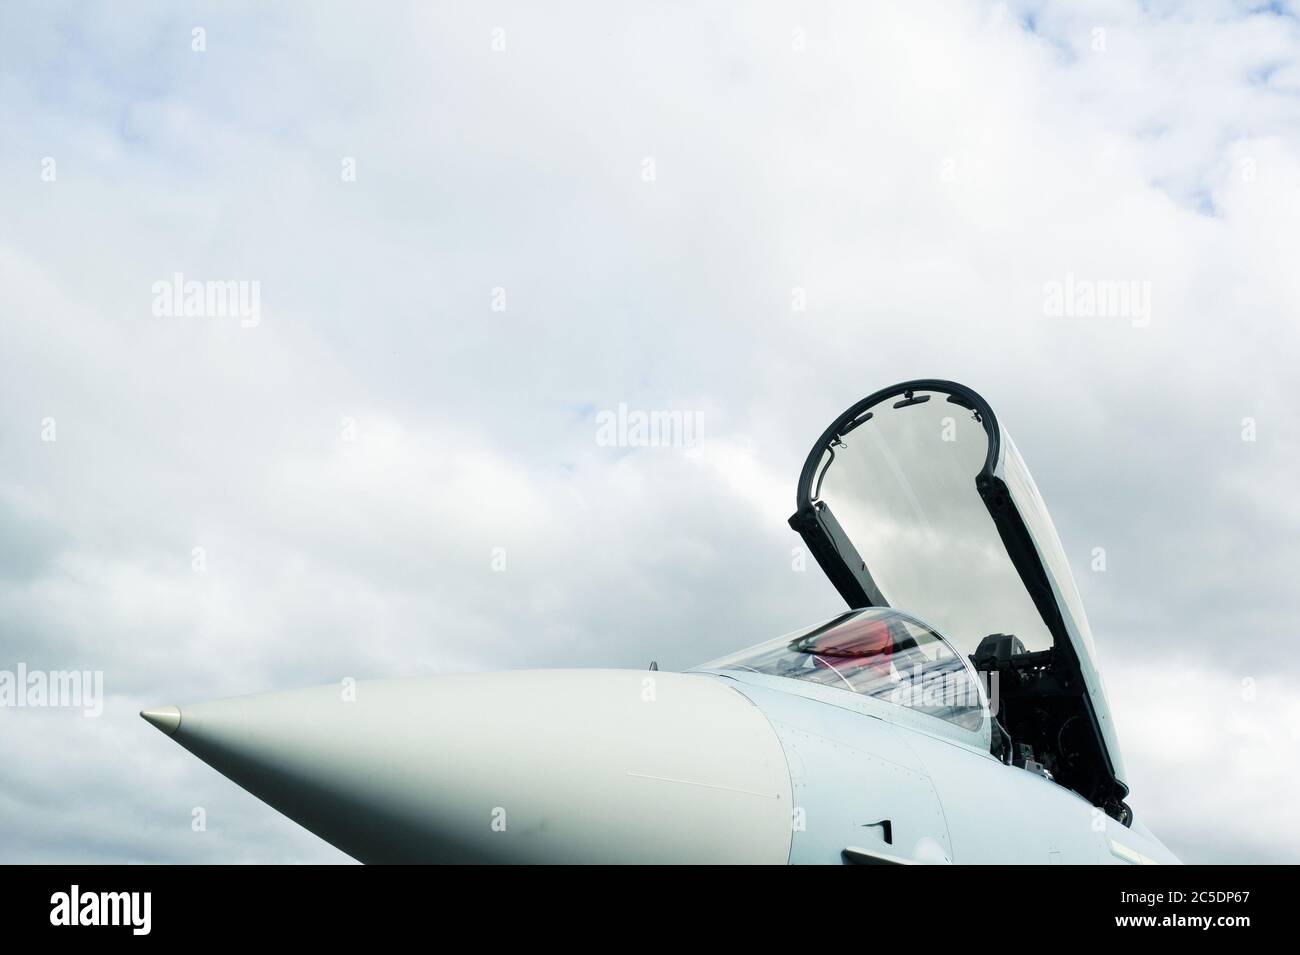 Détail de l'avion de chasse militaire - le poste de pilotage de l'avion est ouvert et préparé pour le pilote. Espace de copie avec une grande zone de ciel nuageux Banque D'Images